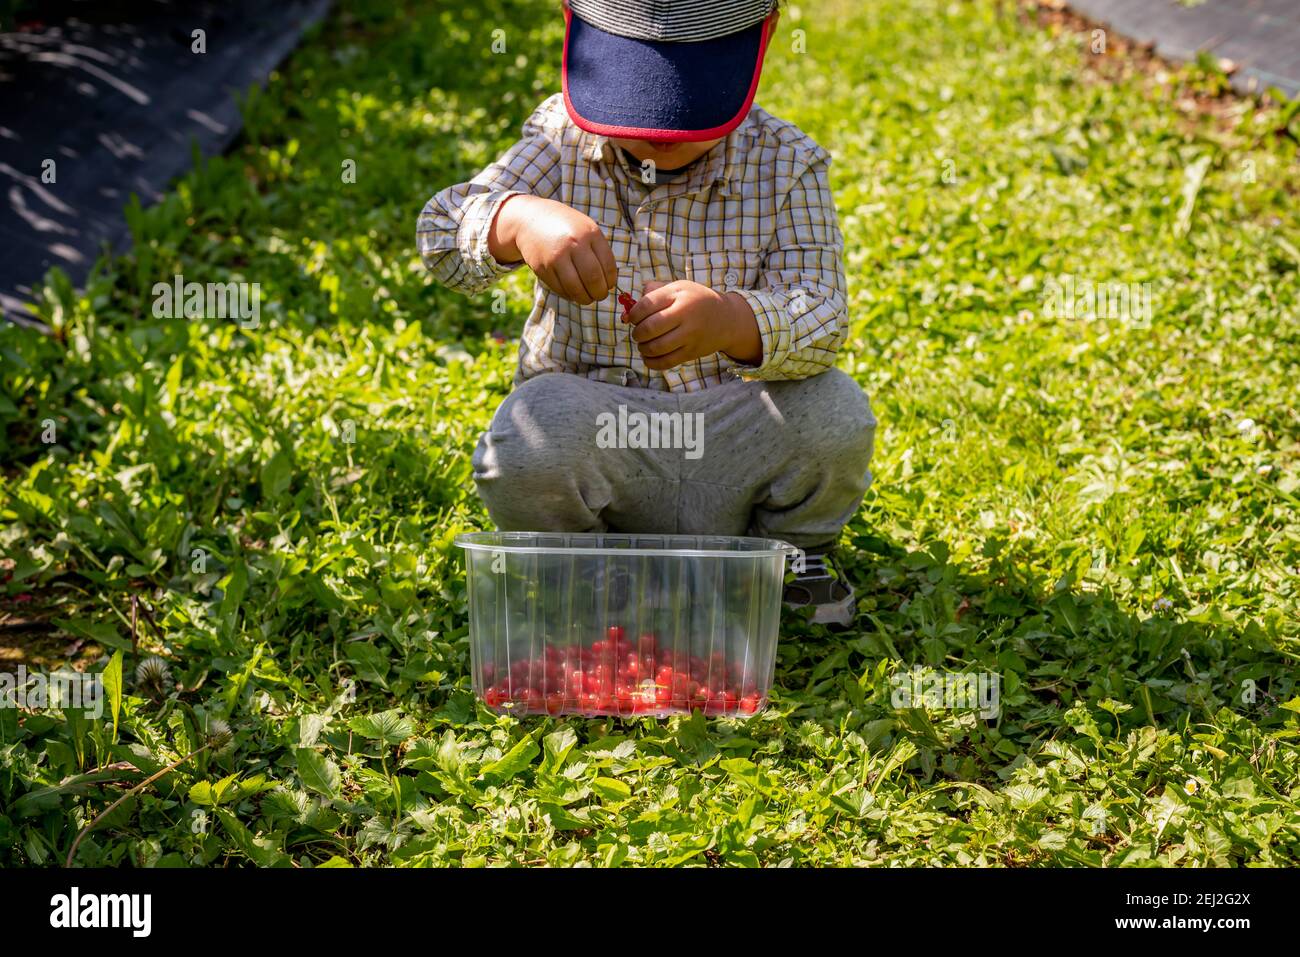 Bambini in giardino. Un ragazzo asiatico con un cestino di frutta in una giornata di sole. Self picking in una fattoria. Bacche di ribes rosso. Ribes rubrum. Vevey, Svizzeran Foto Stock